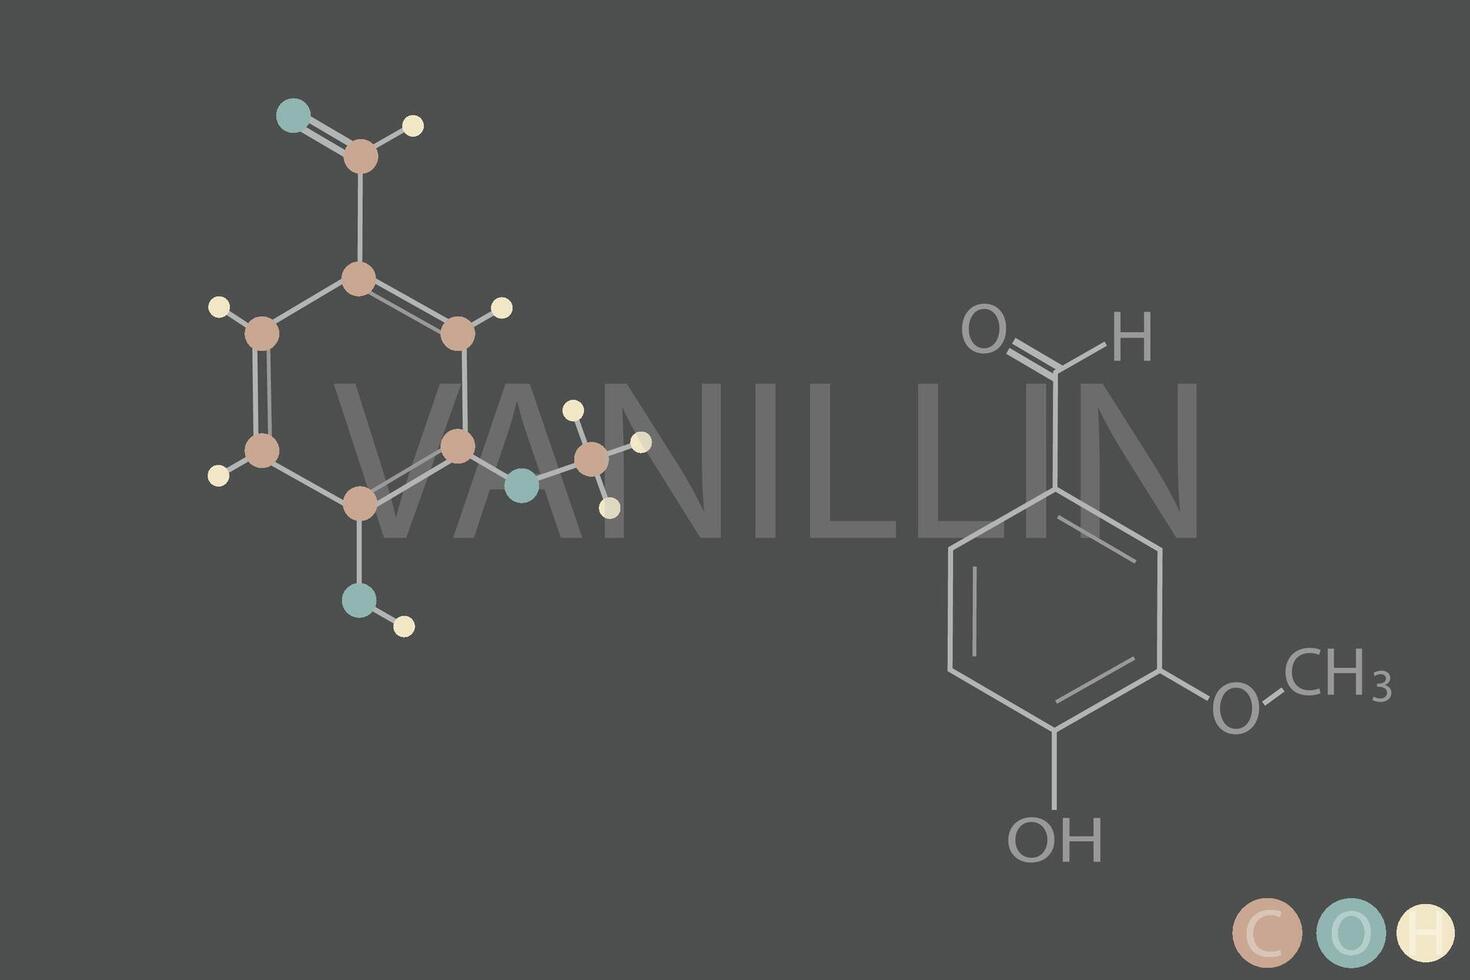 Vanillin molekular Skelett- chemisch Formel vektor